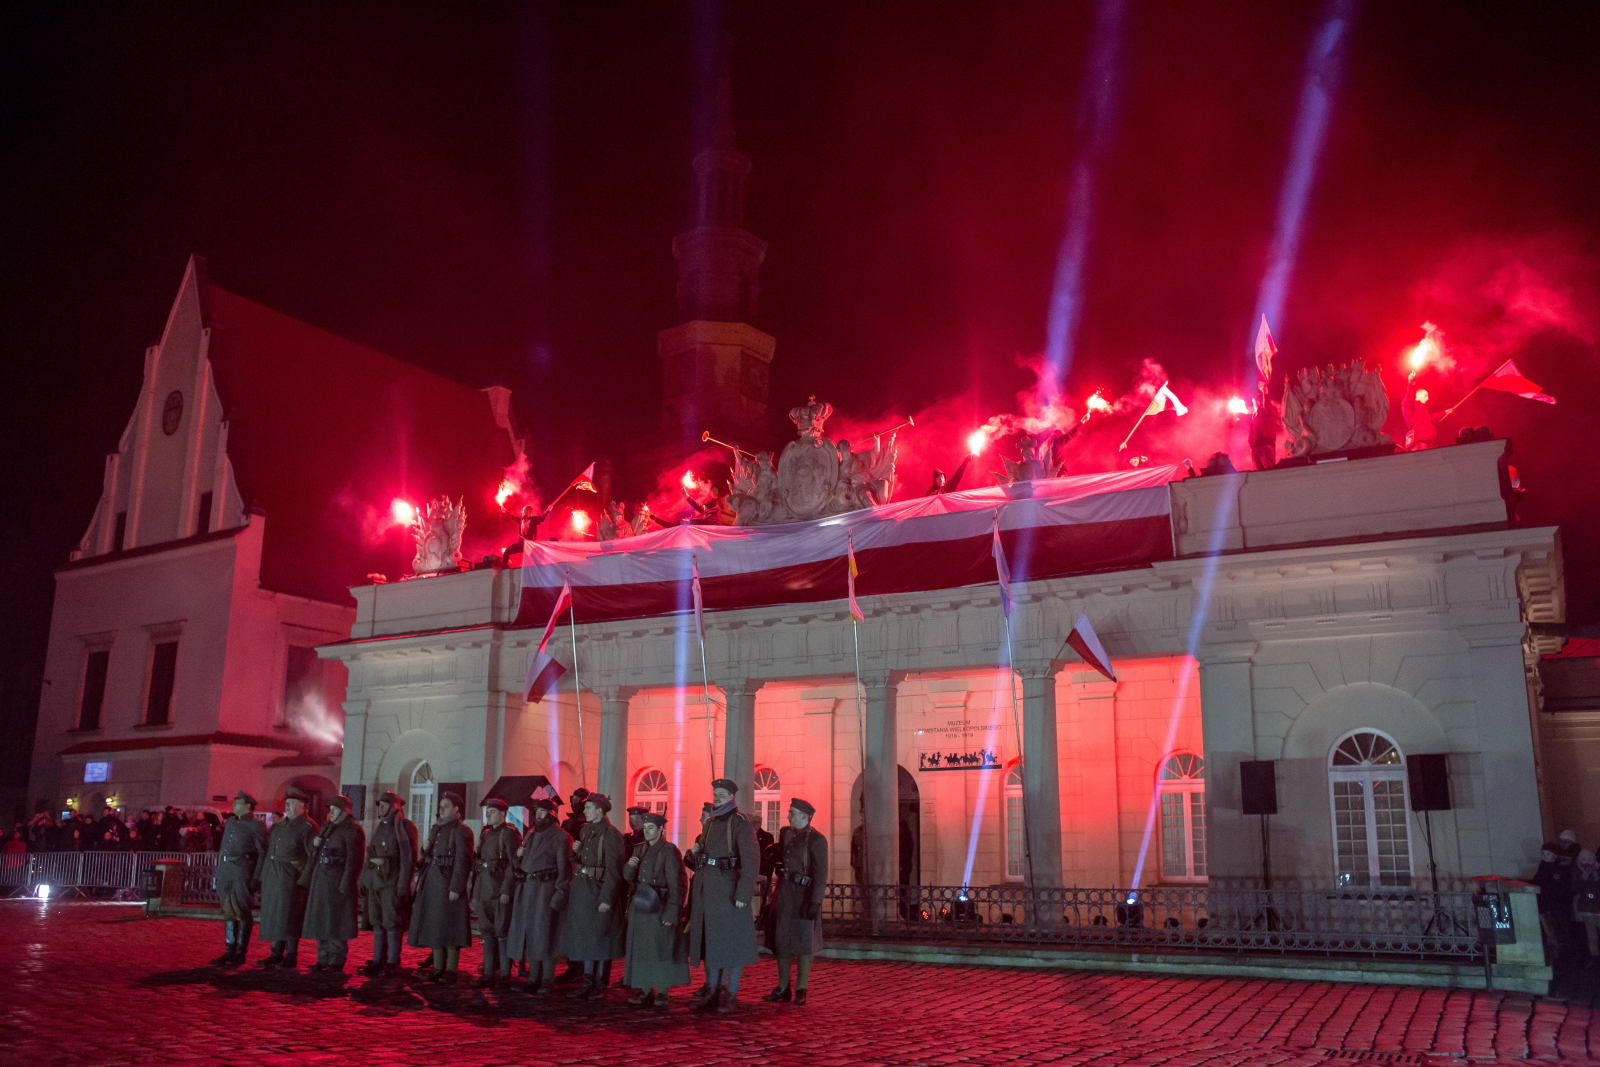  Obóz powstańczy i walki, zainscenizowane na placu Wolności w Poznaniu  w ramach obchodów 98. rocznicy powstania wielkopolskiego.